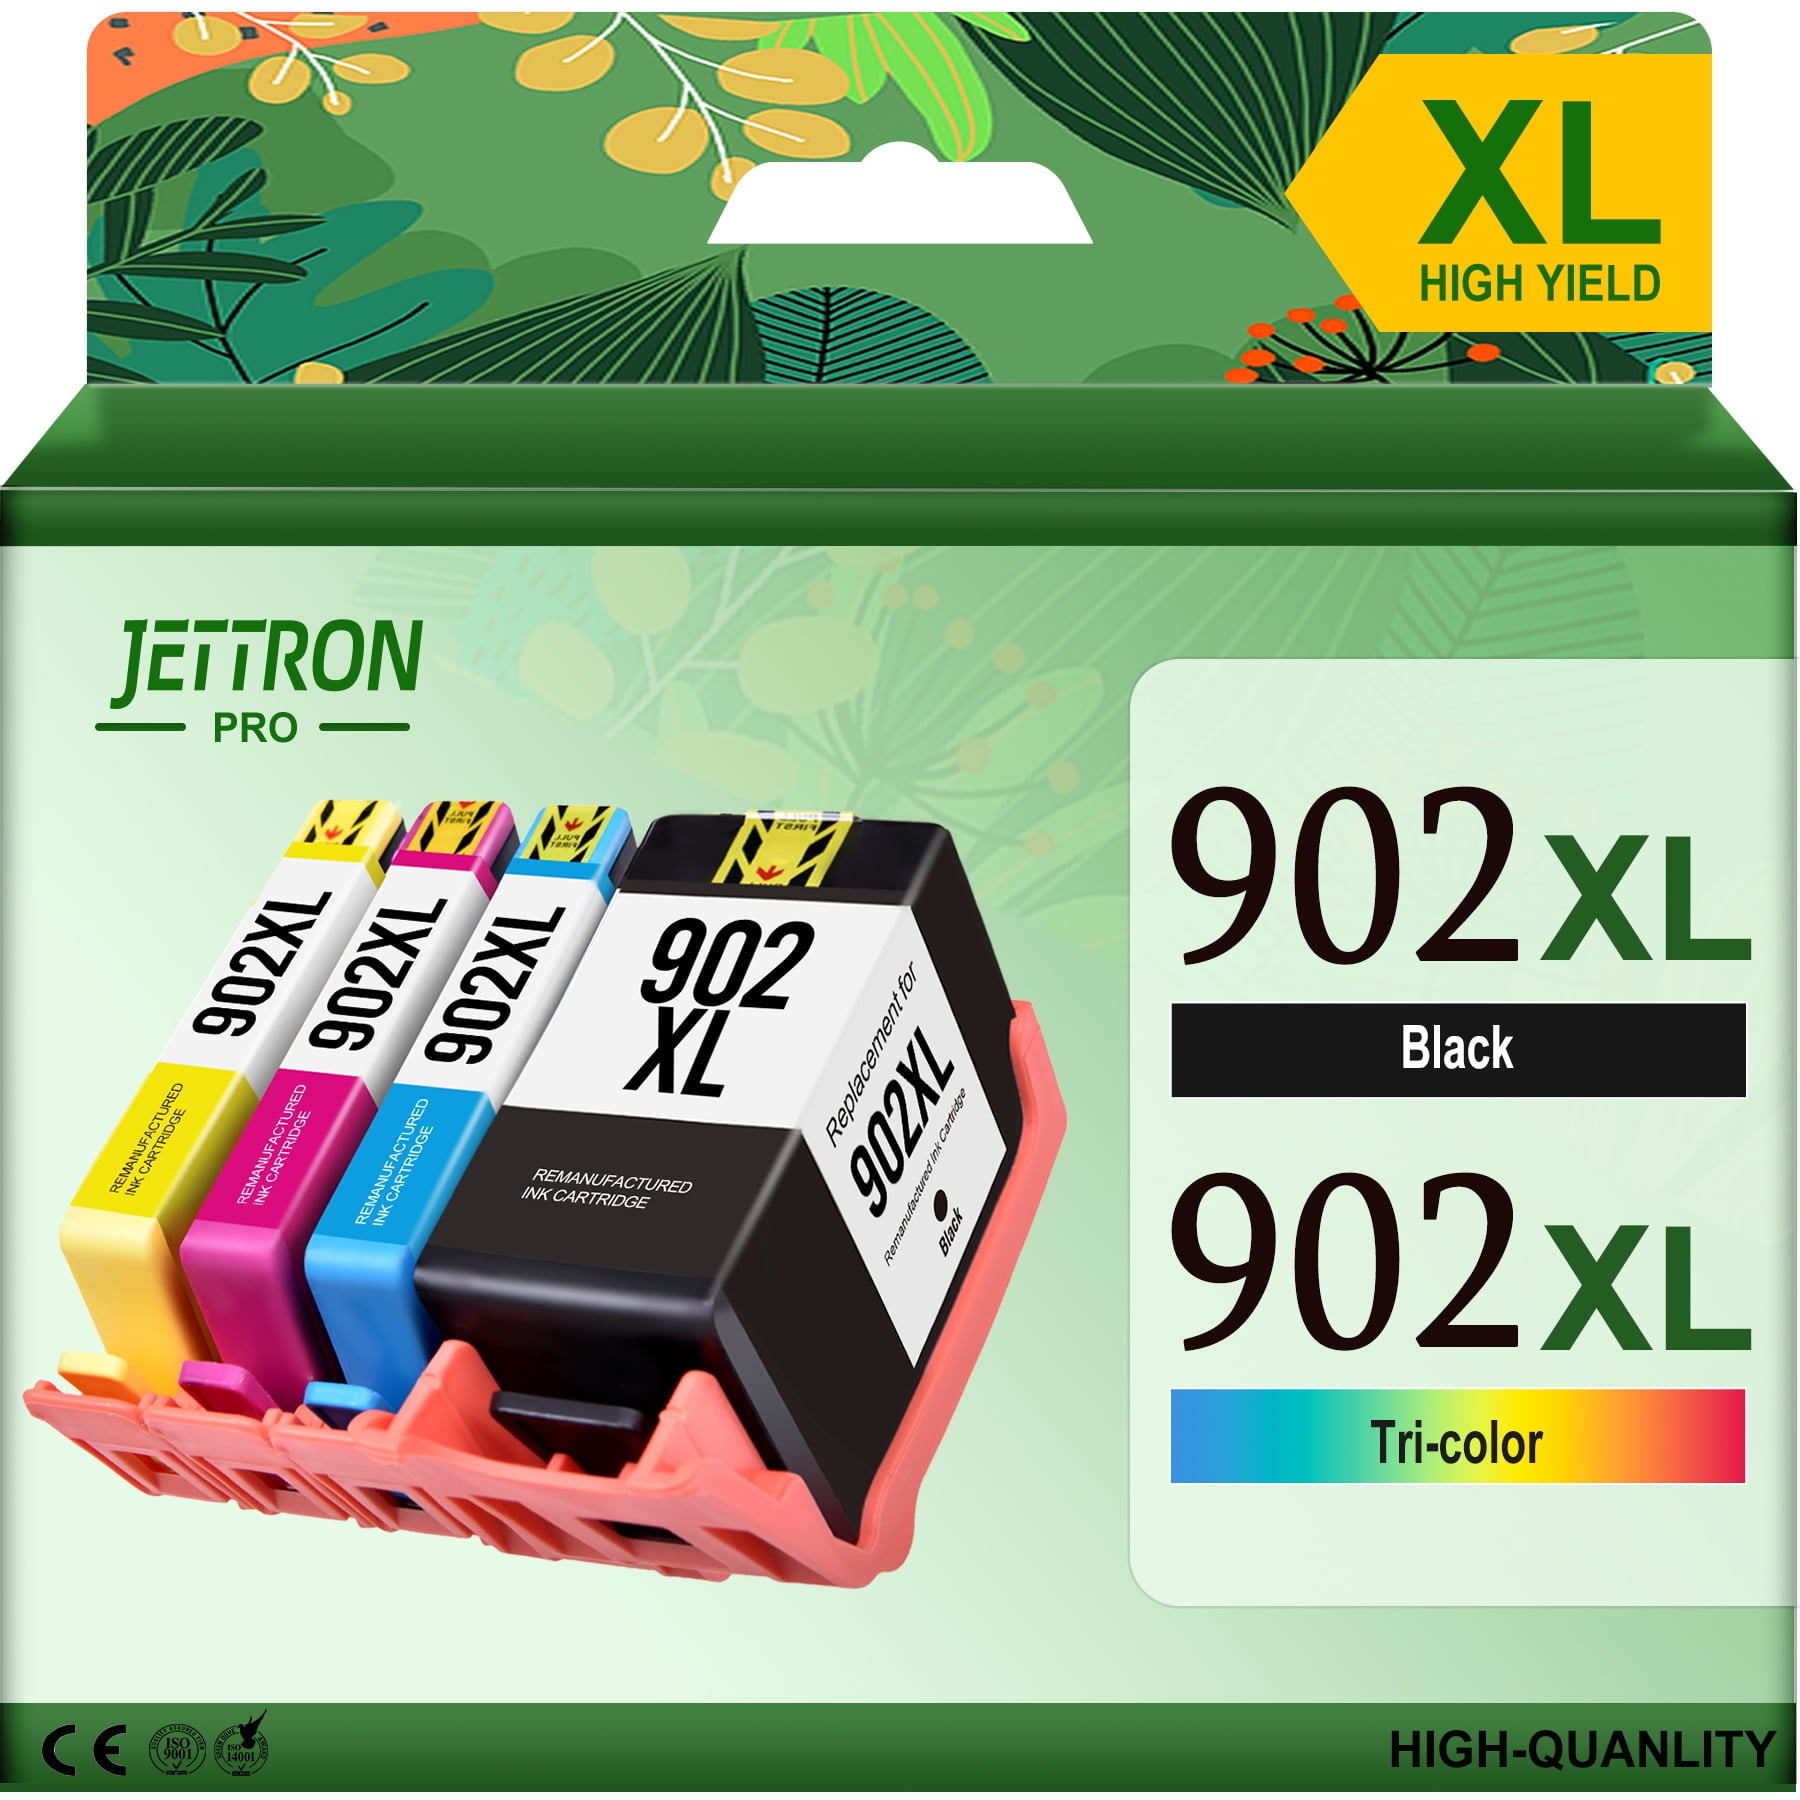 Used HP Officejet Pro 6230 Wireless Color Inkjet Printer - SKU#1601466  E3E03A